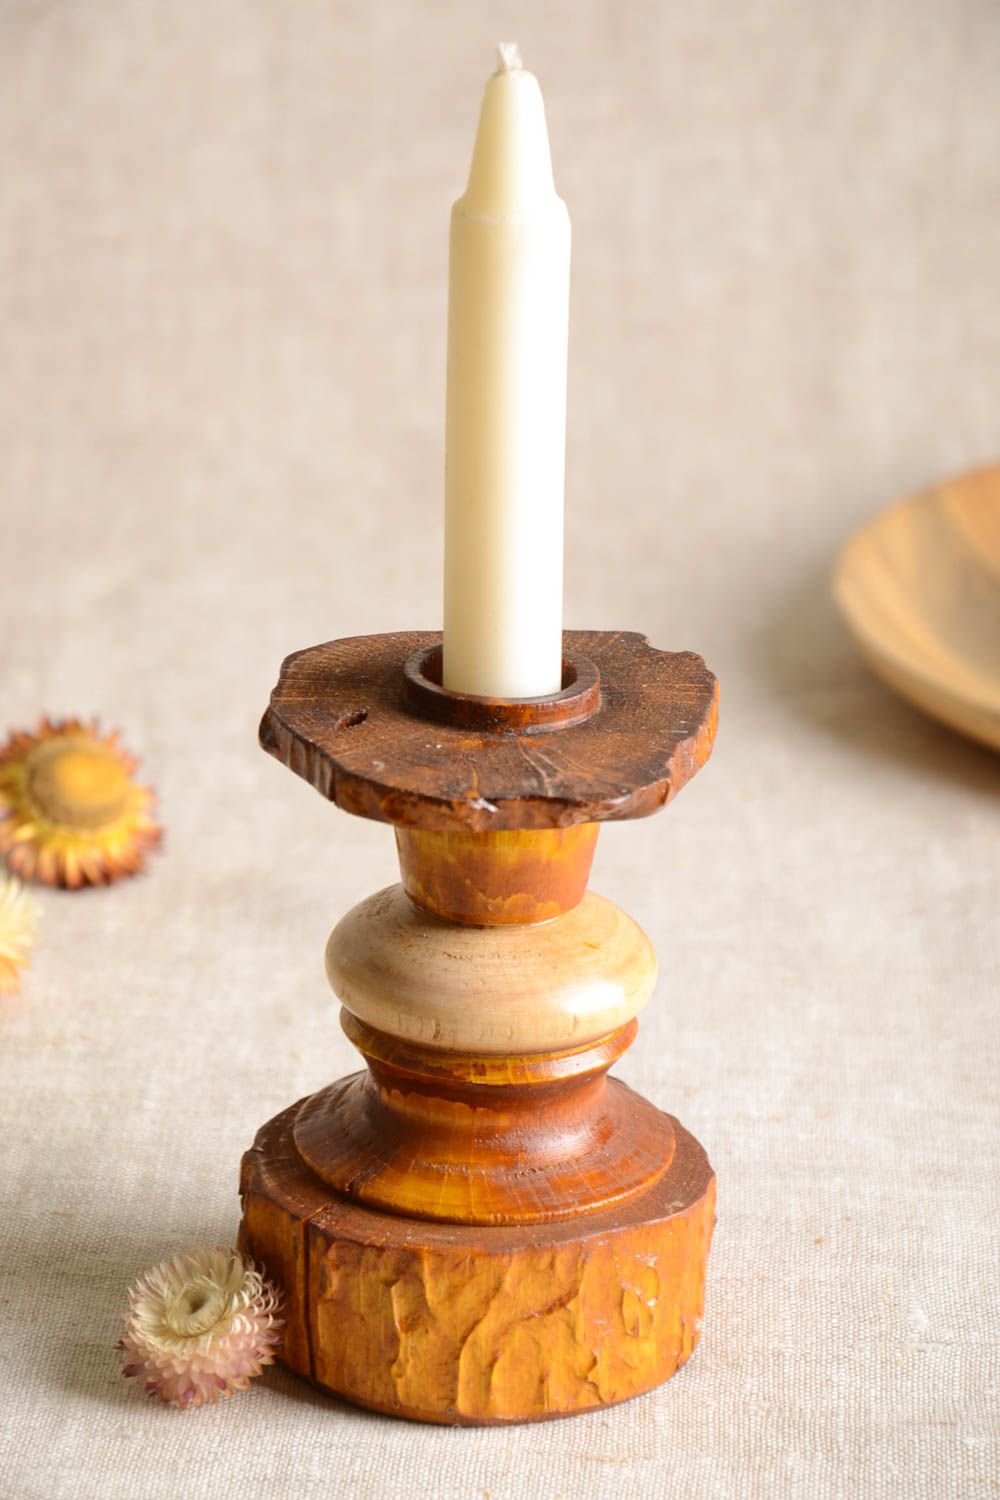 Handmade candlestick designer candlestick wooden candlestick decor ideas photo 1